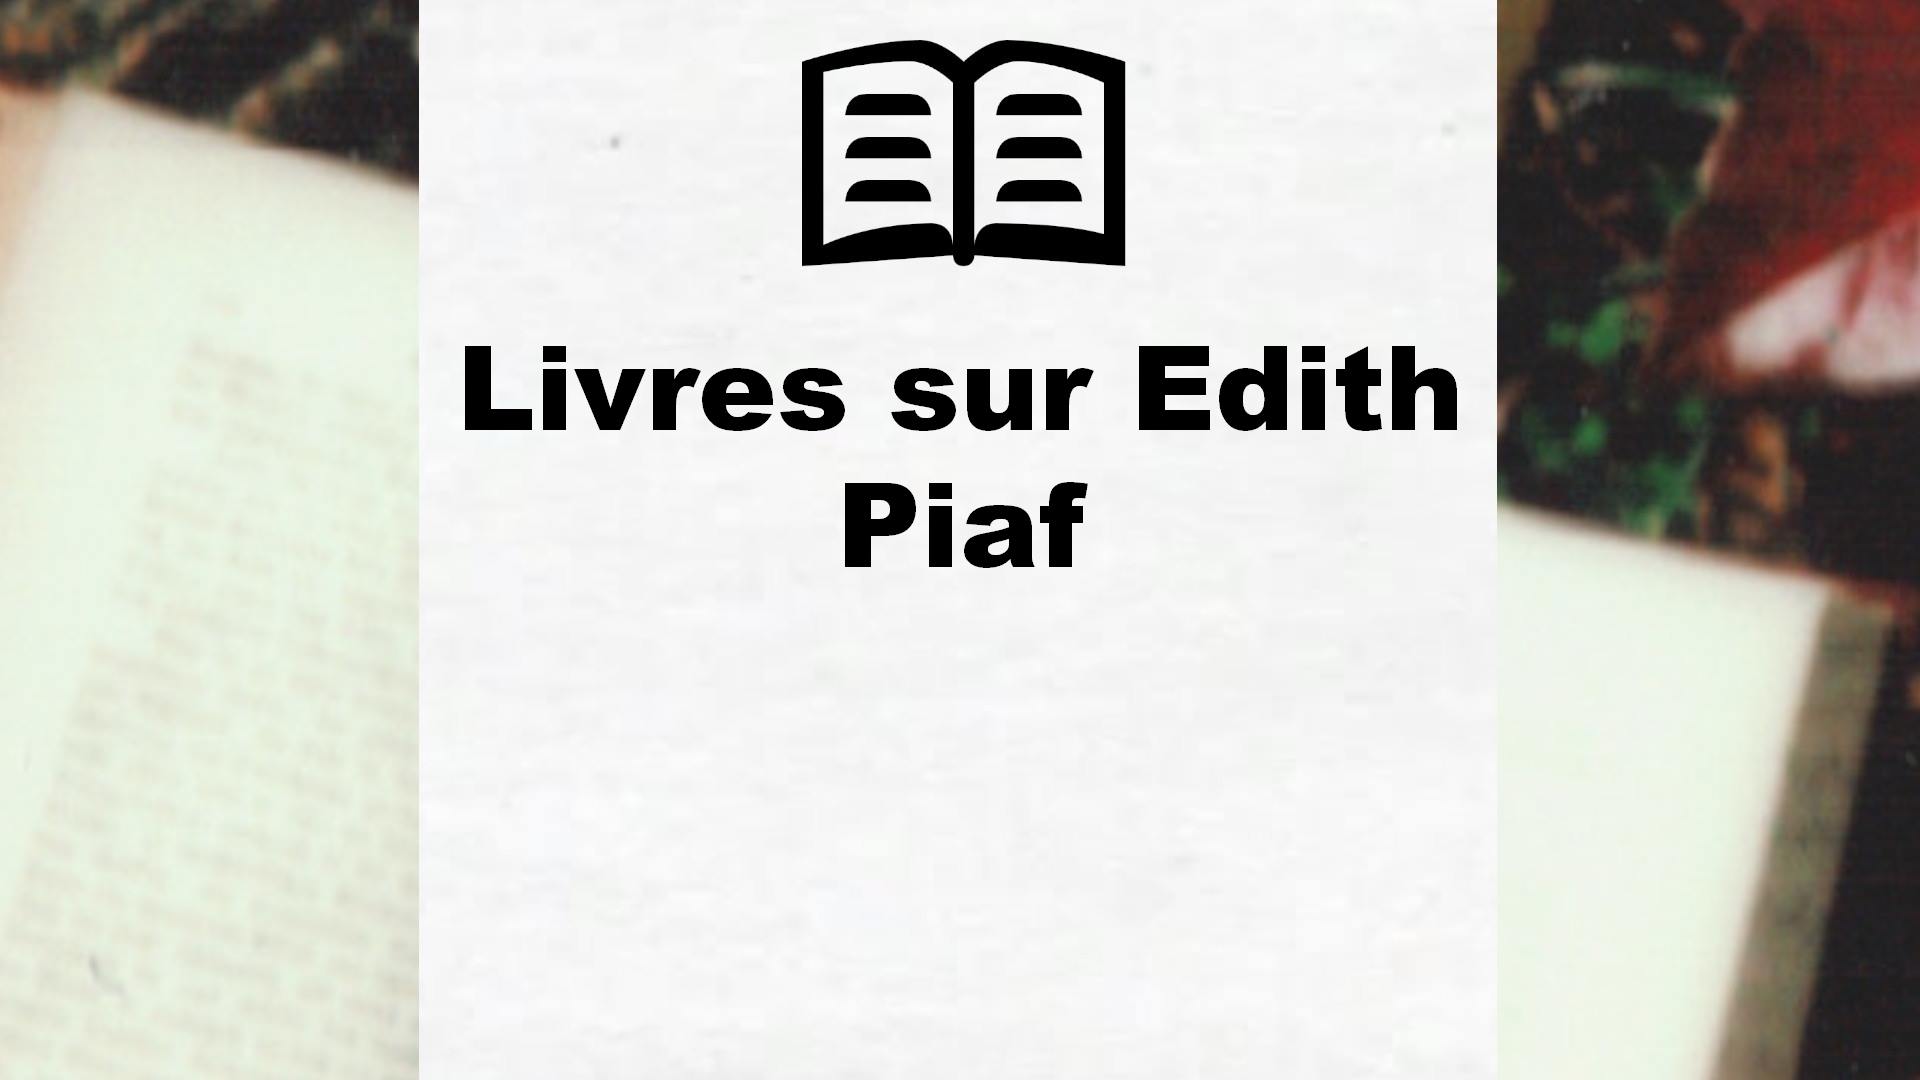 Livres sur Edith Piaf